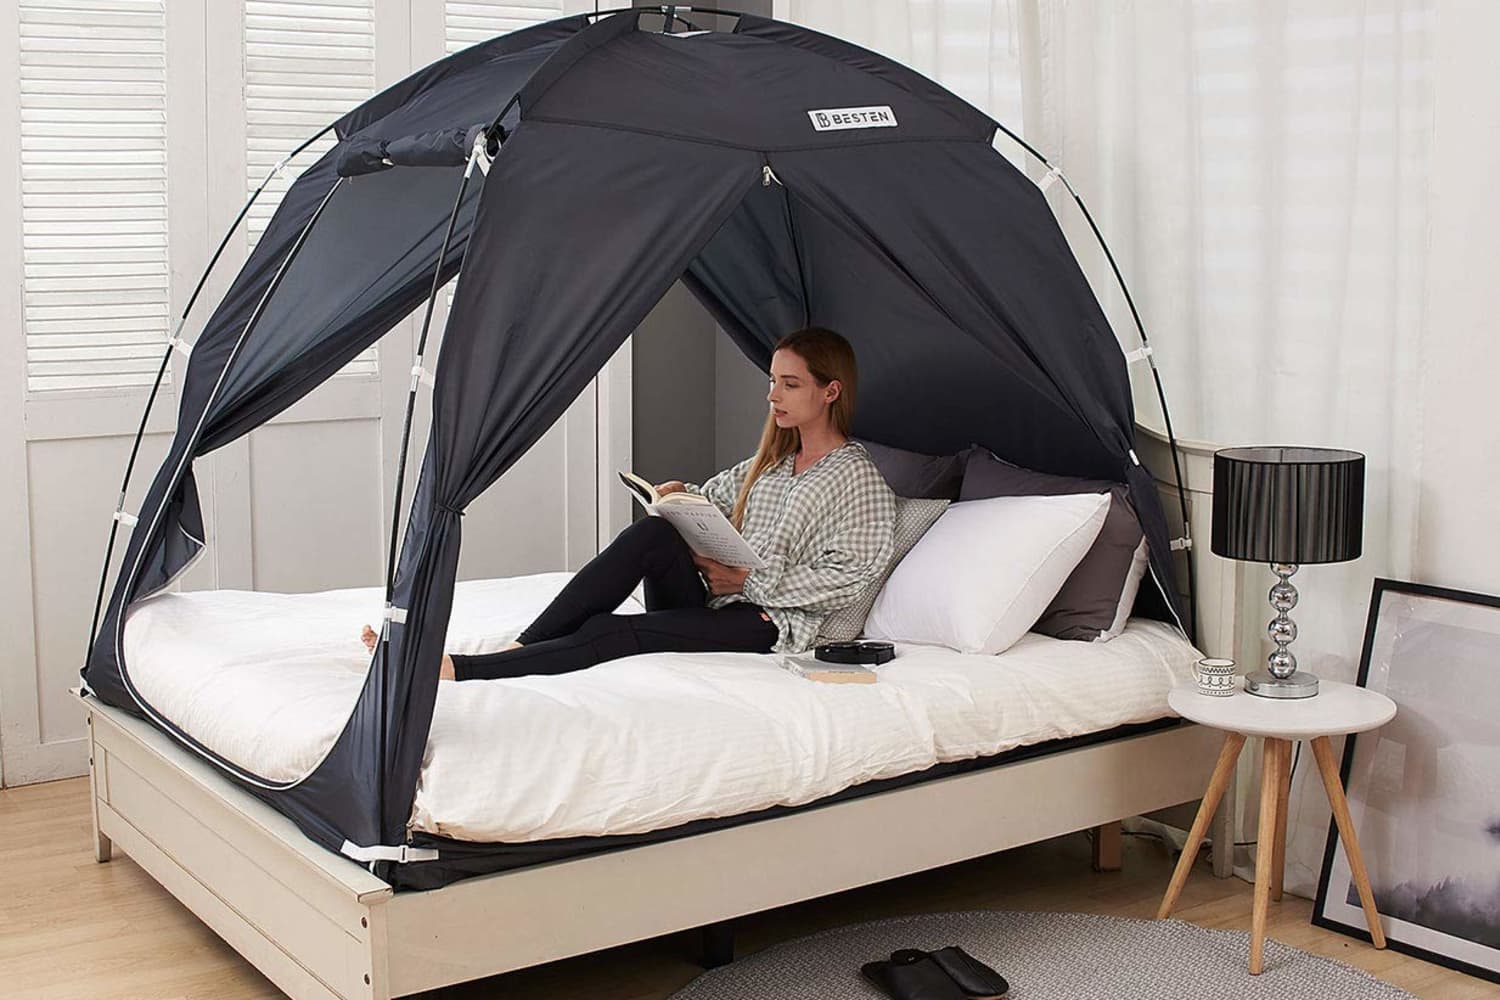 queen size tent sleeping mattress